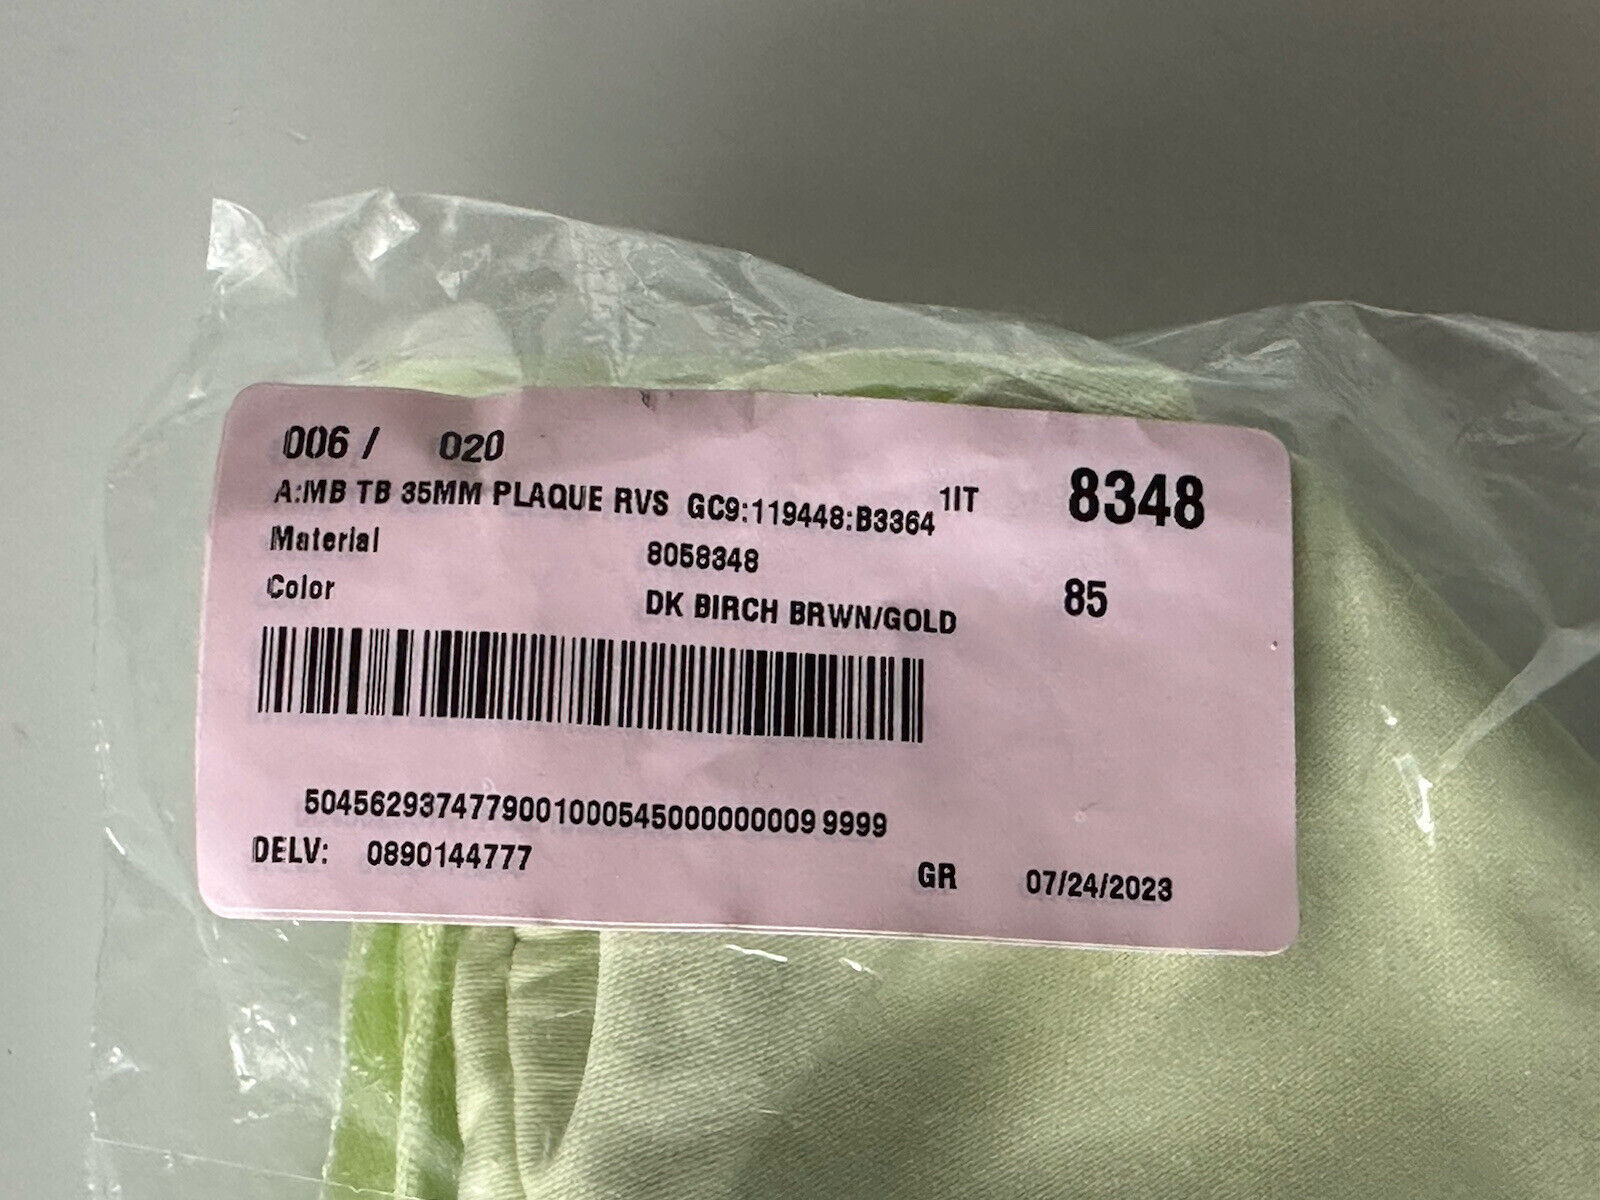 Neu mit Etikett: 550 $ Burberry TB Leder-Wendegürtel aus dunkler Birke 34/85 8058348 Italien